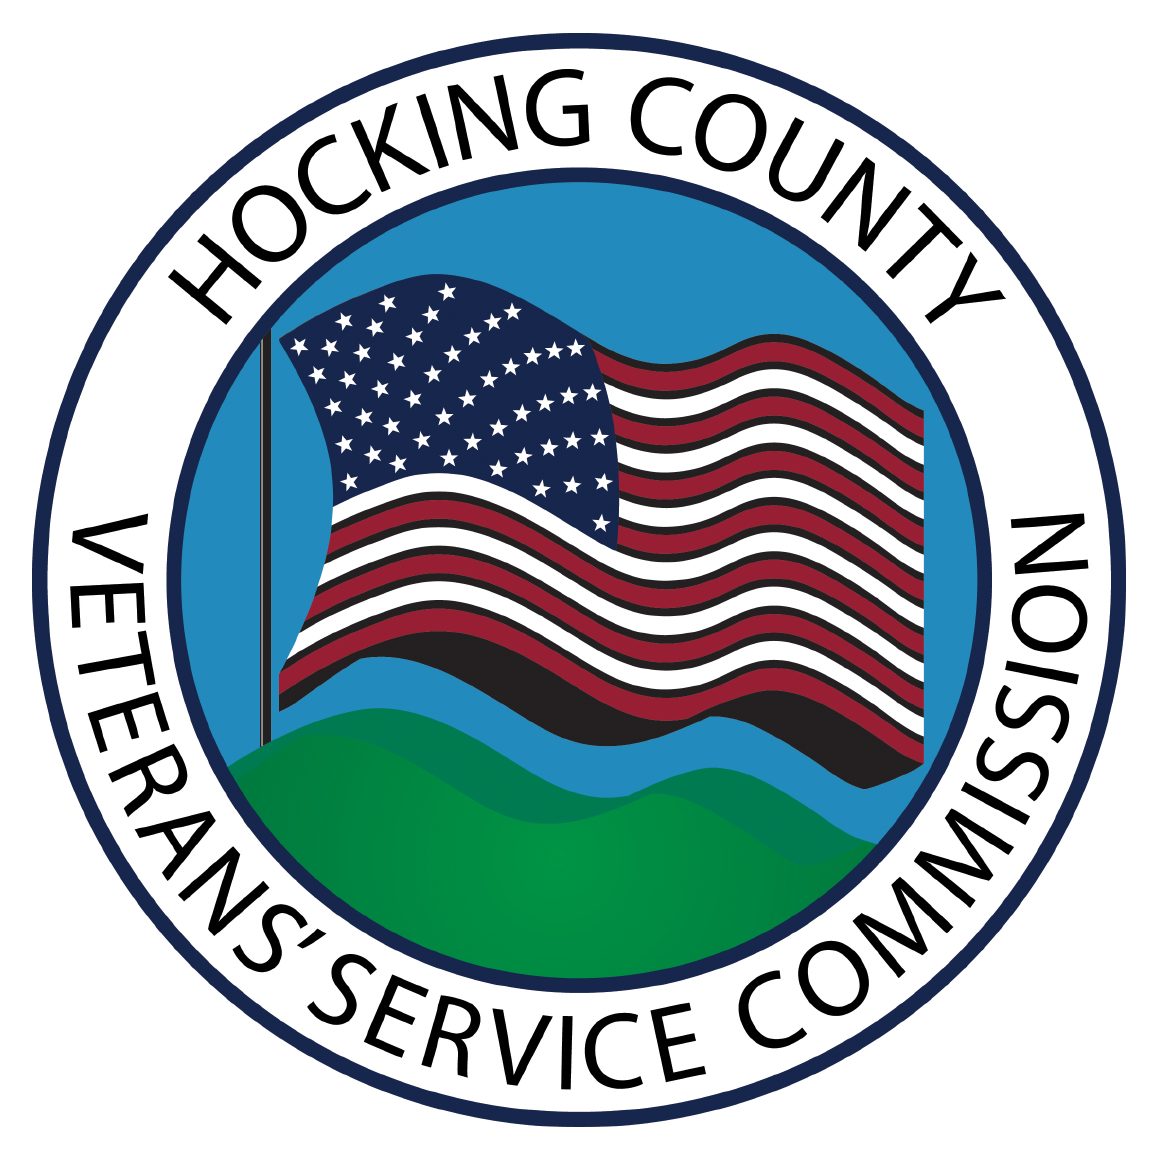 Hocking County VSC logo